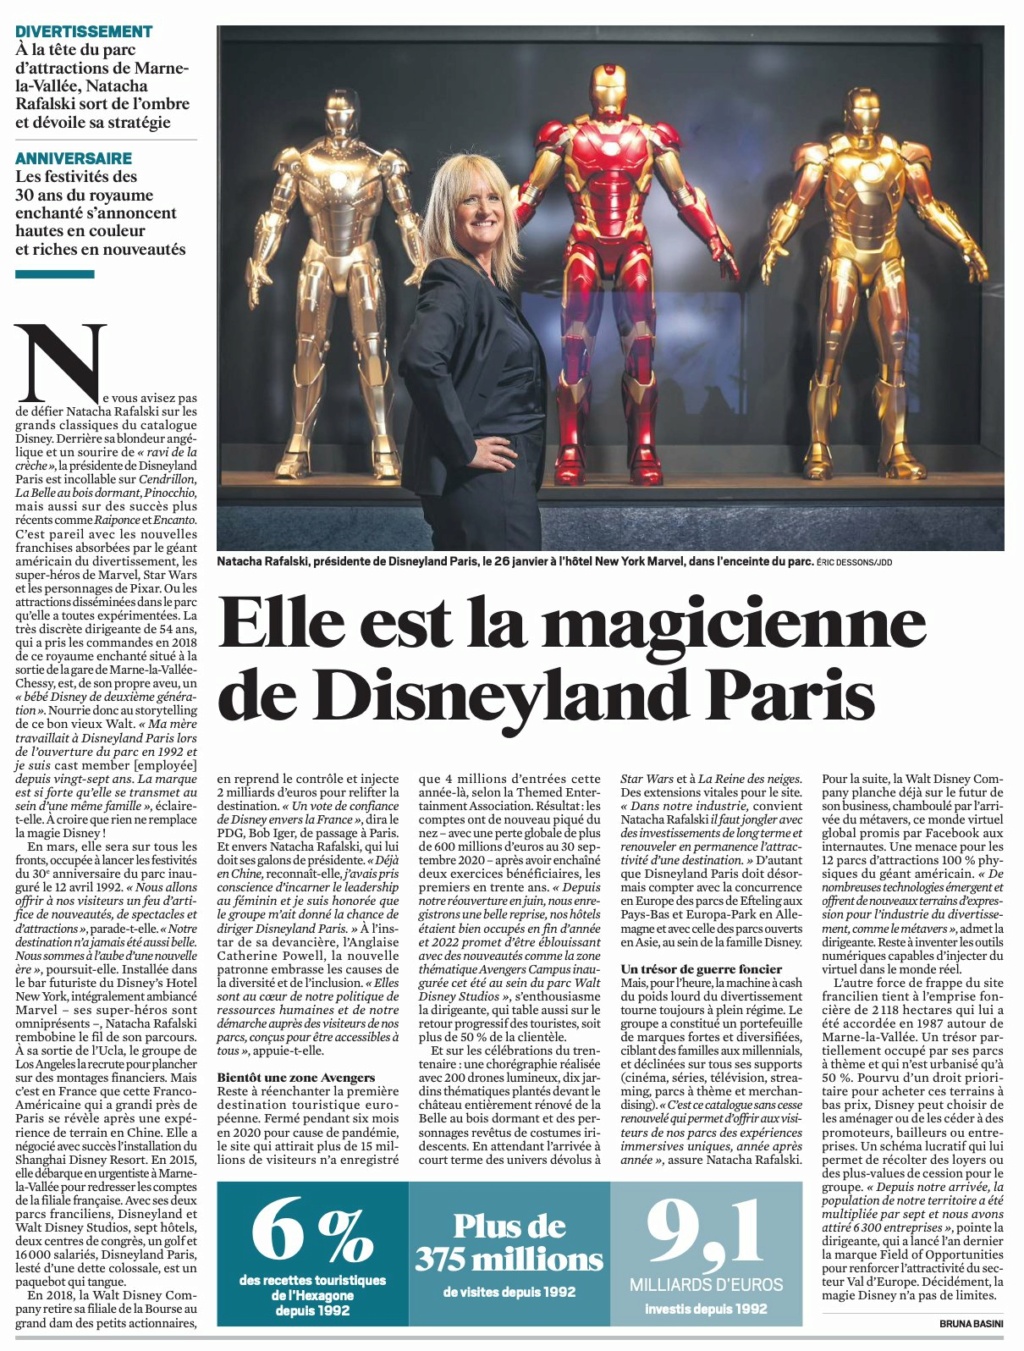 Disneyland Paris dans la presse (papier, digitale...) - Page 12 20220212